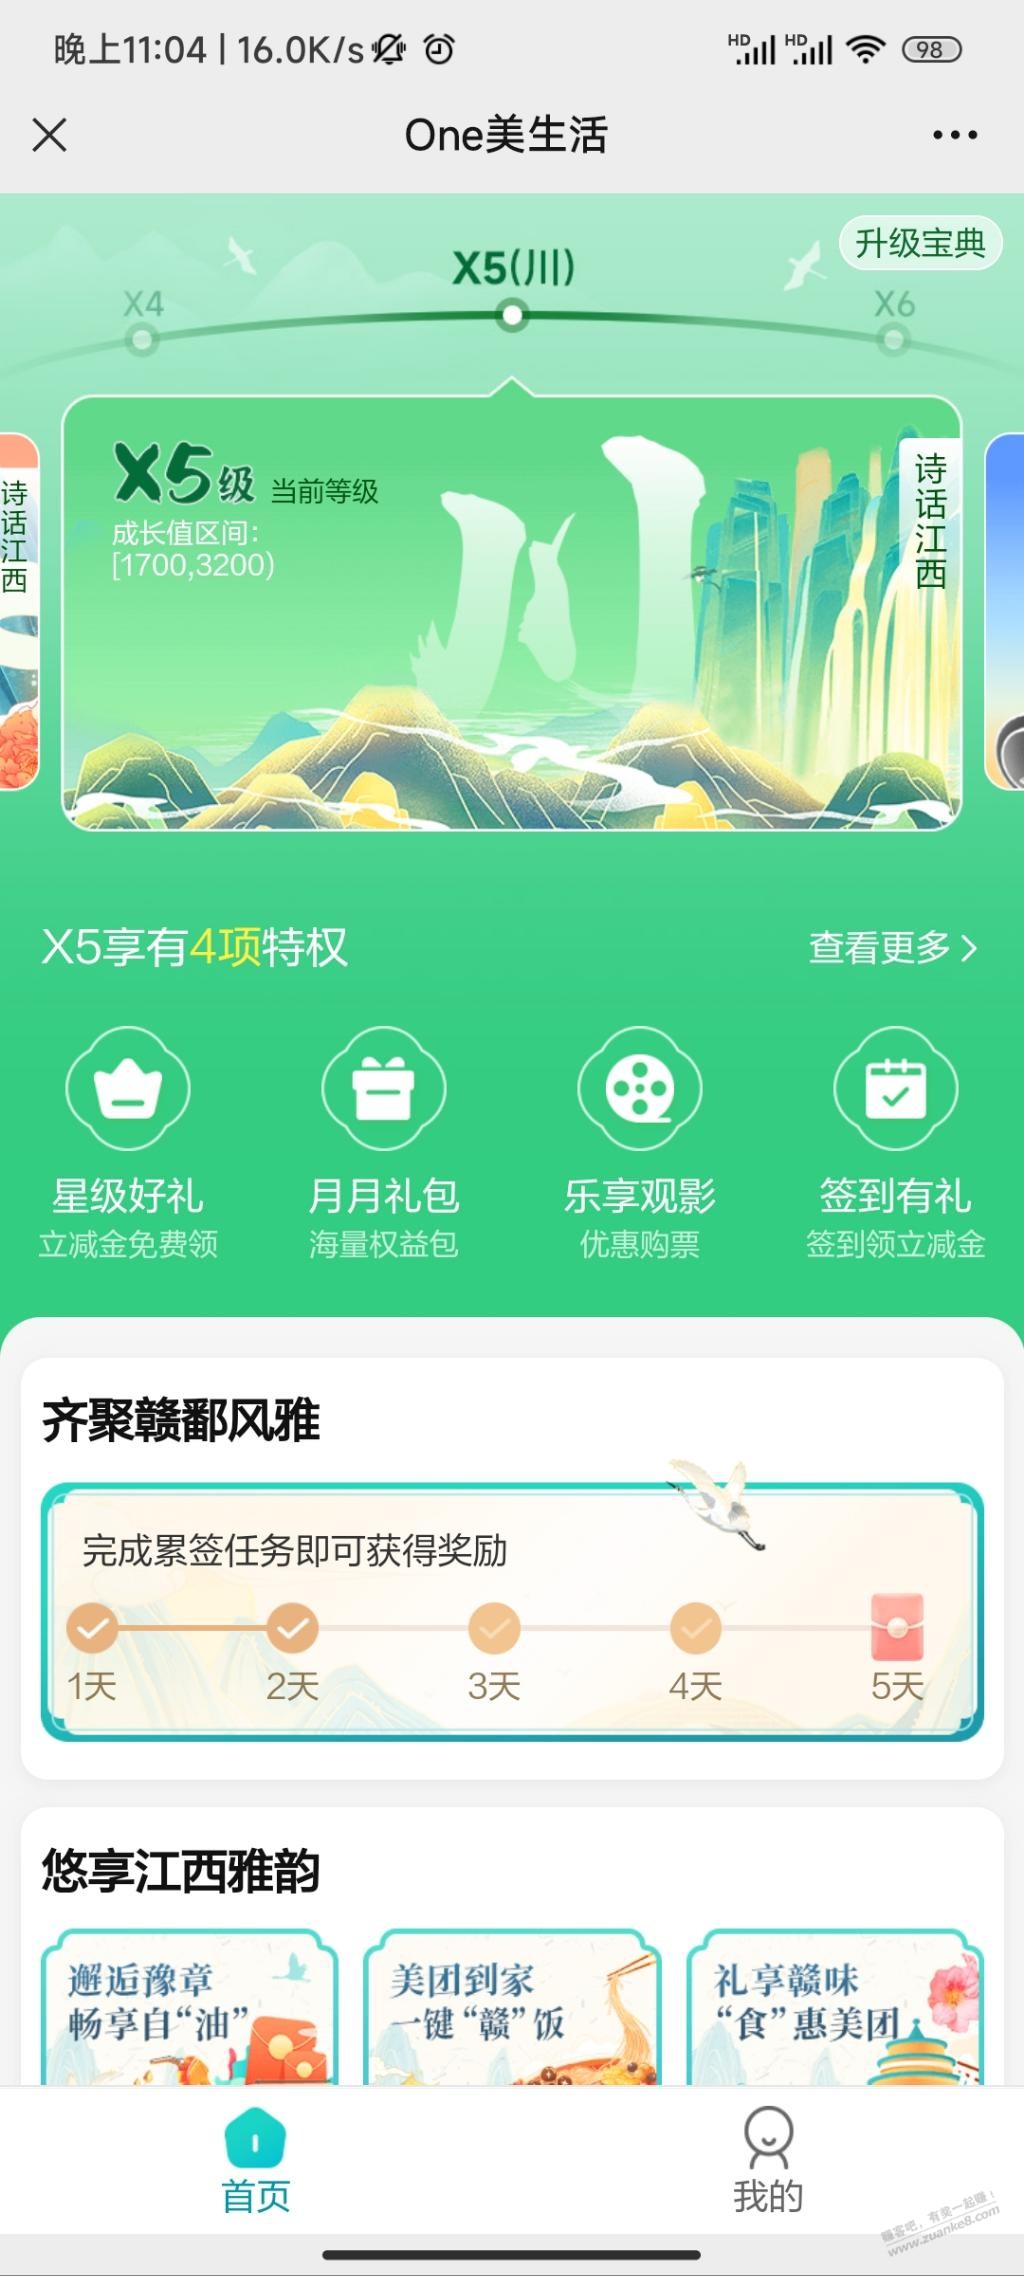 江西银行 立减金30毛-惠小助(52huixz.com)